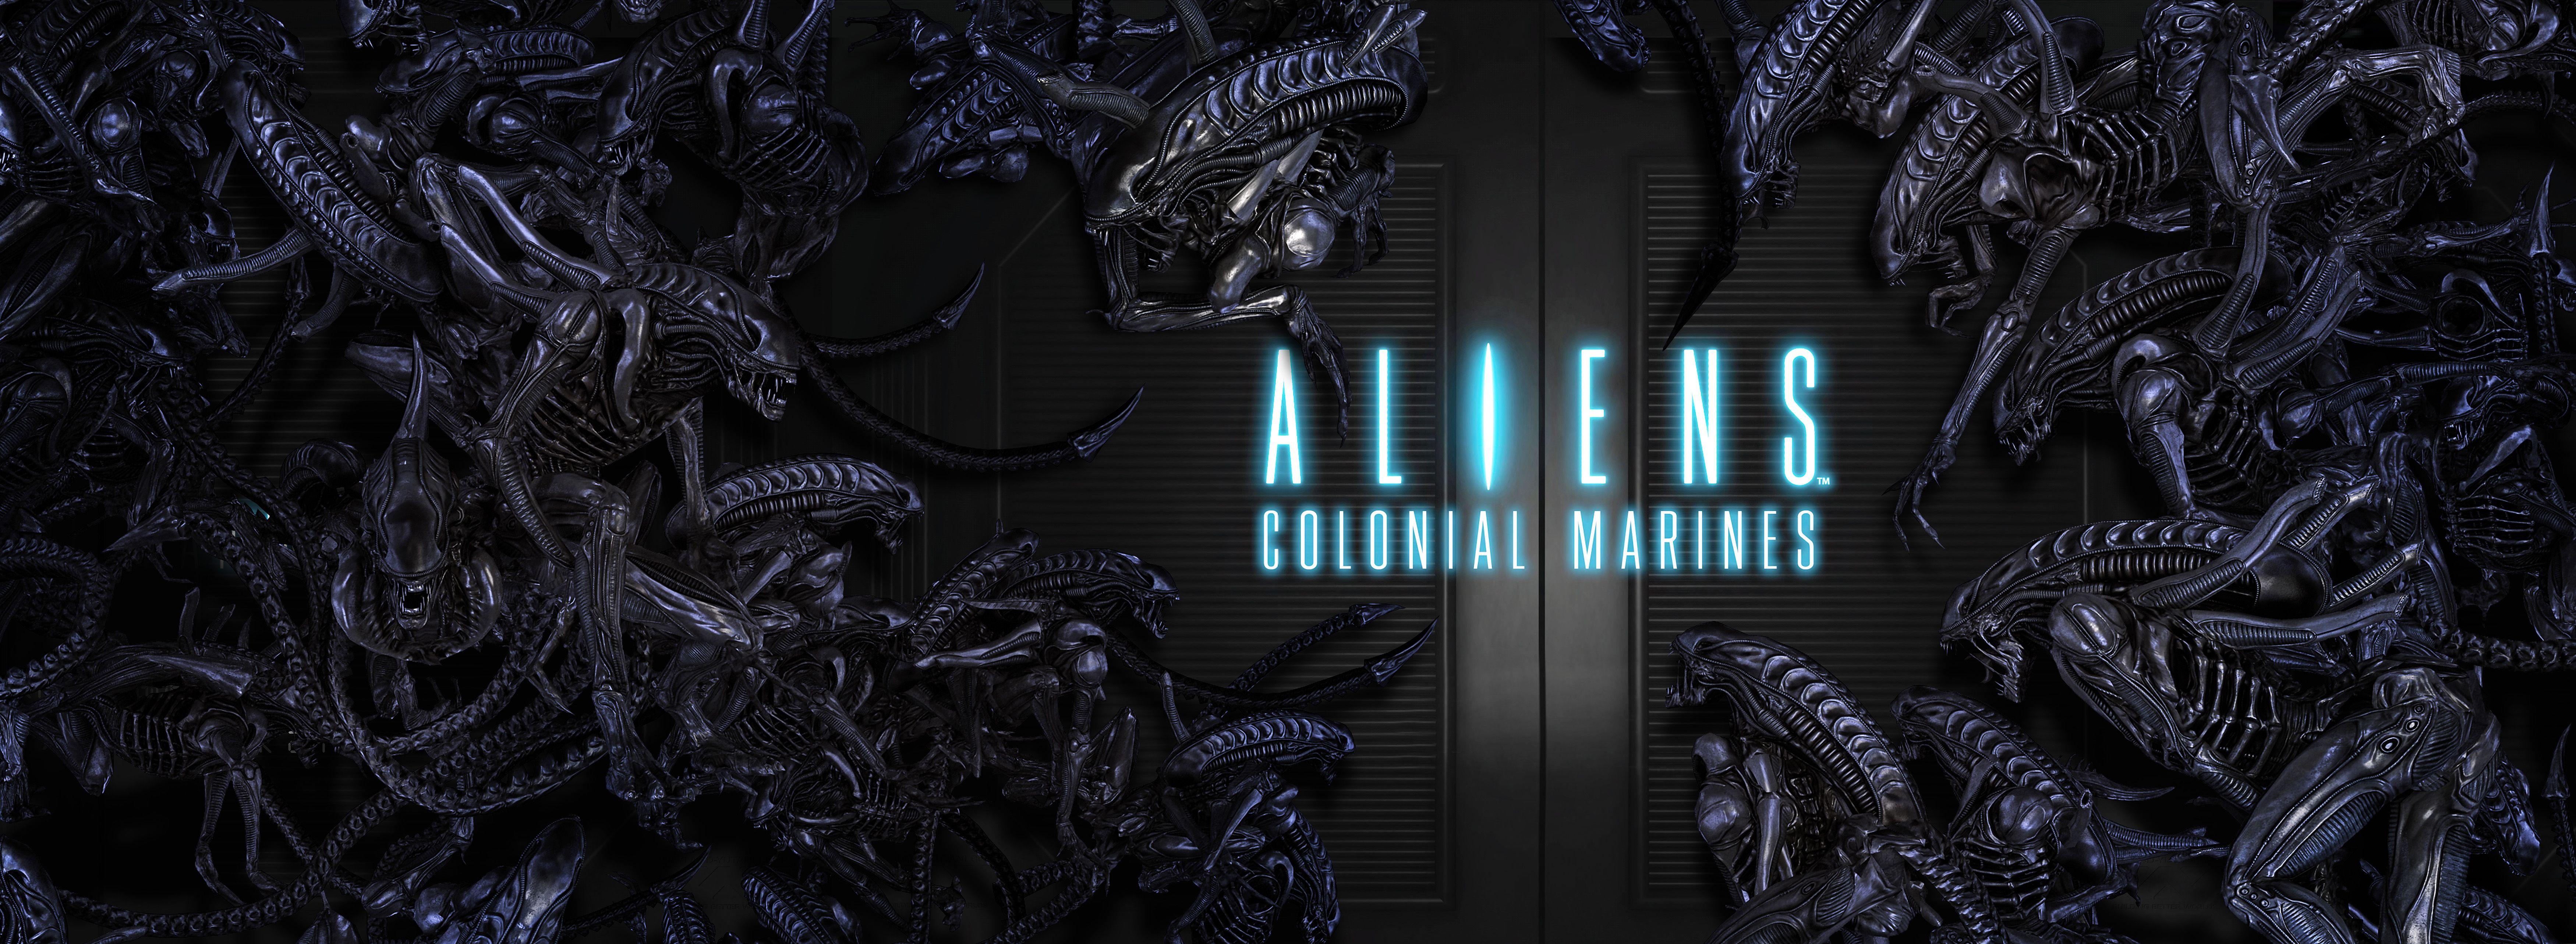 Aliens vr. Aliens: Colonial Marines (2013). Aliens Colonial Marines Королева обои. Aliens Colonial Marines арт.